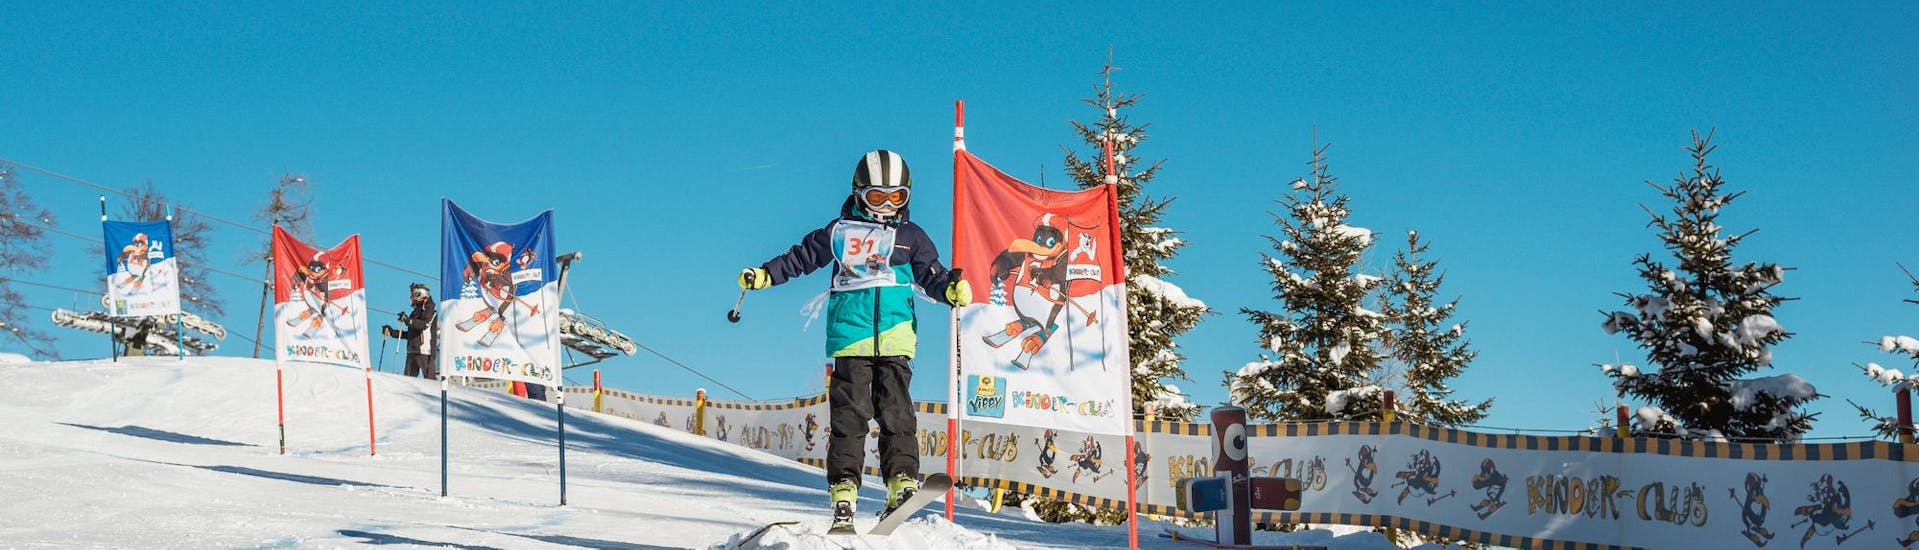 Een leerling skiet op een blauwe piste tussen de poorten tijdens zijn kinderskilessen "BOBO's Kids-Club" voor gevorderden bij de Busslehner Achenkirch Skischool.